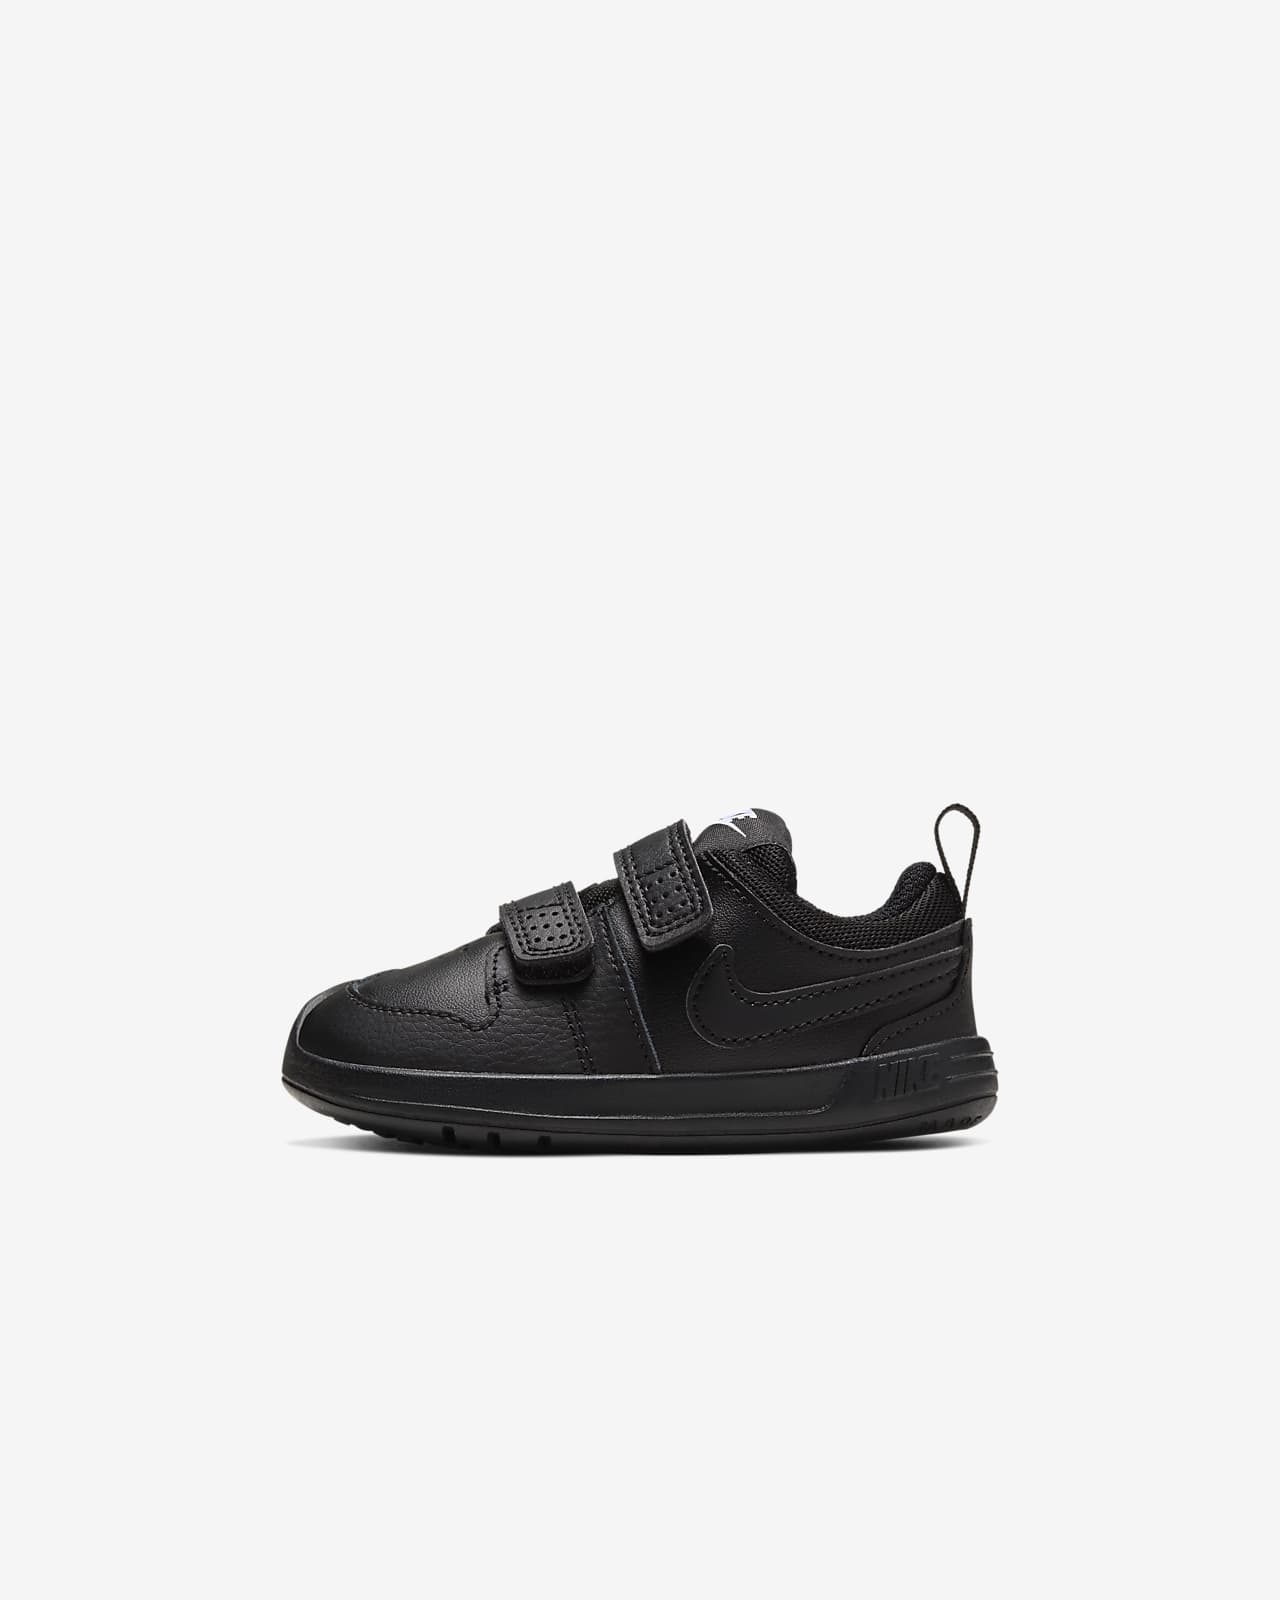 Nike Pico 5 Baby \u0026amp; Toddler Shoe. Nike LU